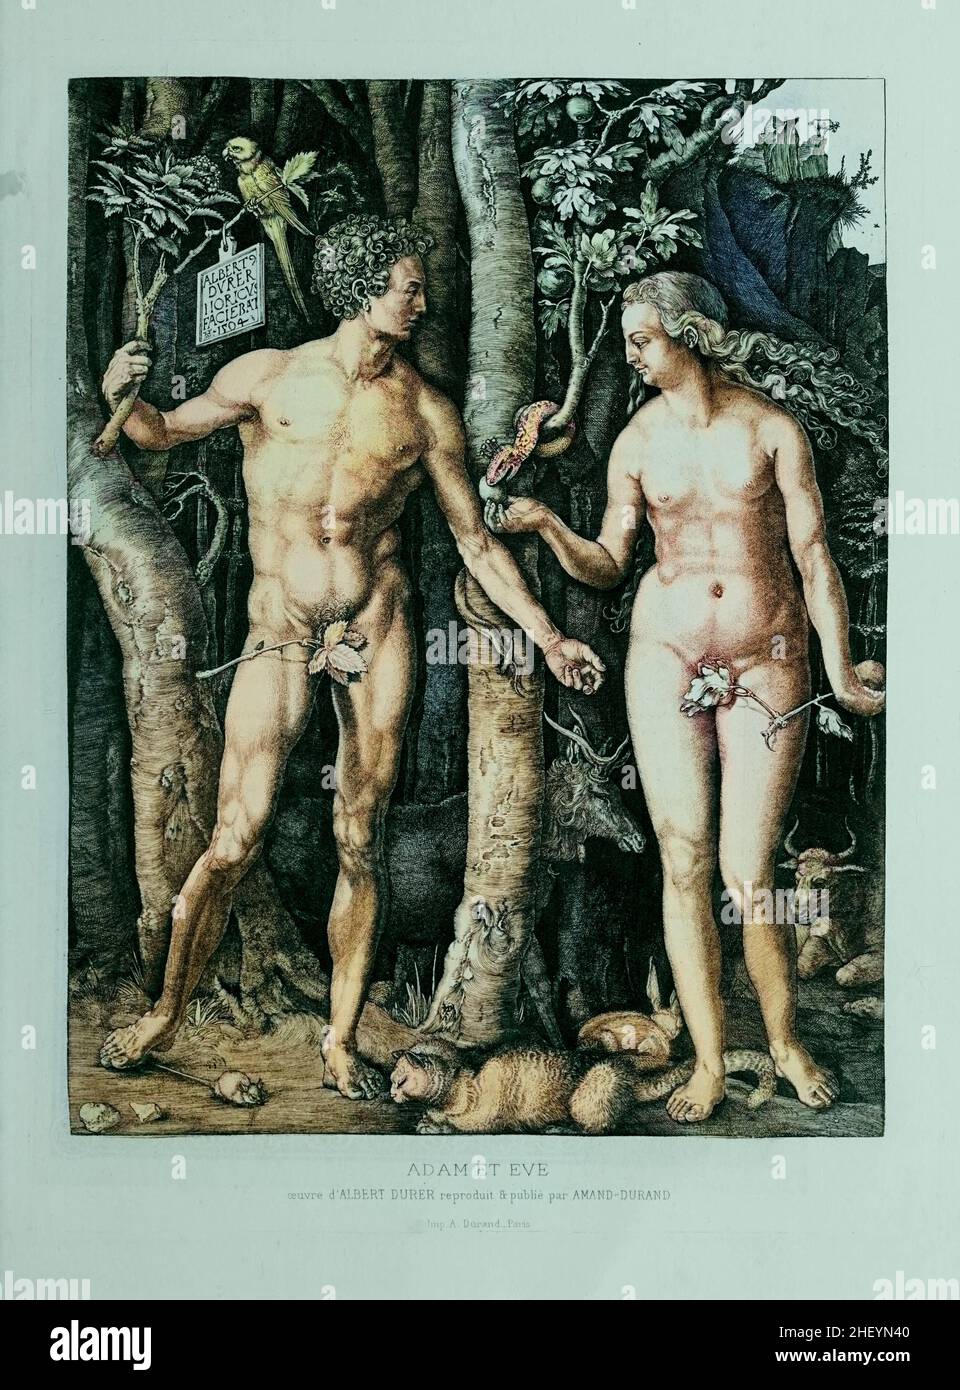 Adam et Eve dans le catalogue des gravures et gravures du jardin d'Eden.France 1881 Banque D'Images